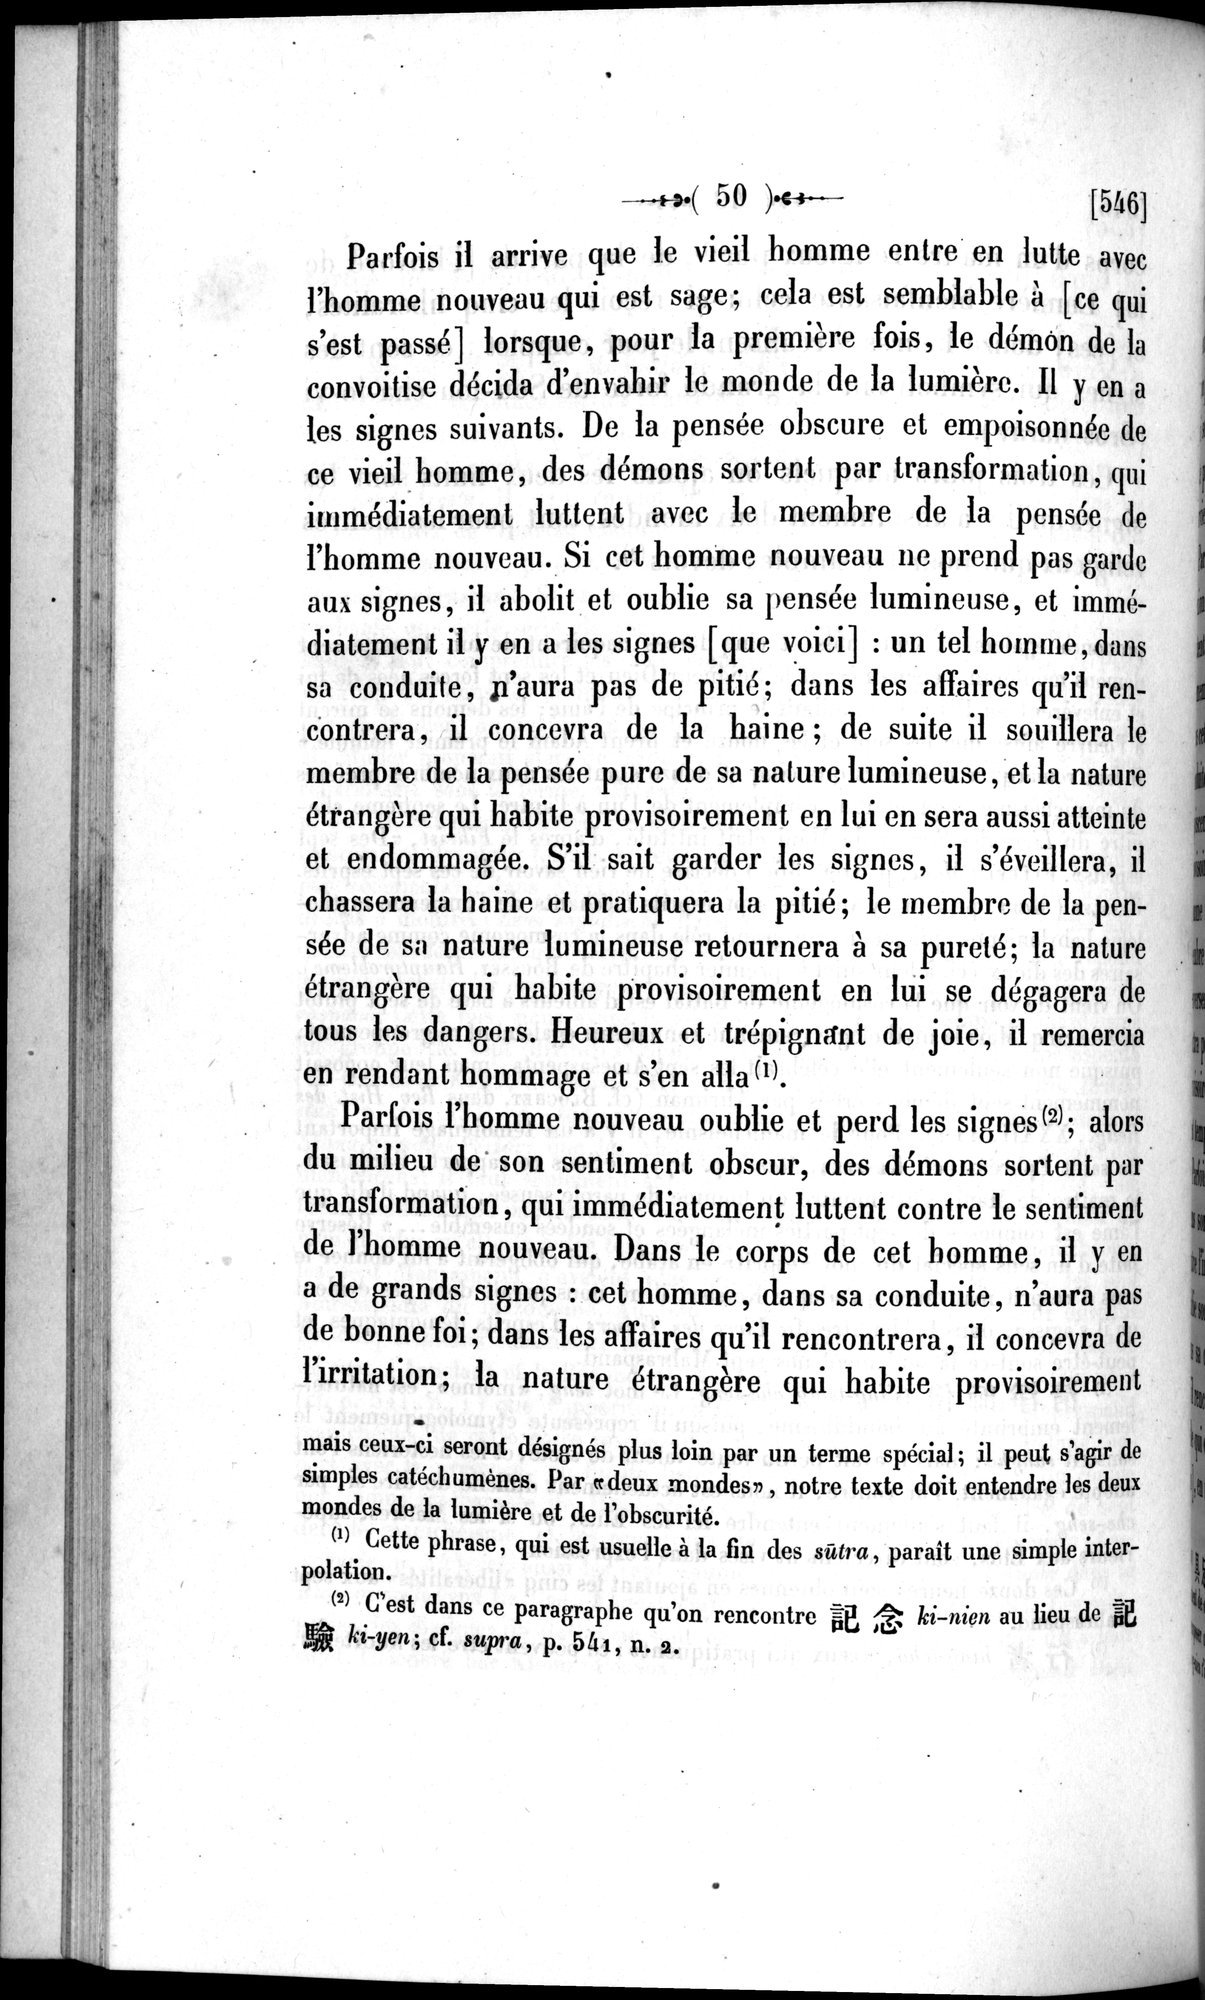 Un traité manichéen retrouvé en Chine : vol.1 / Page 60 (Grayscale High Resolution Image)